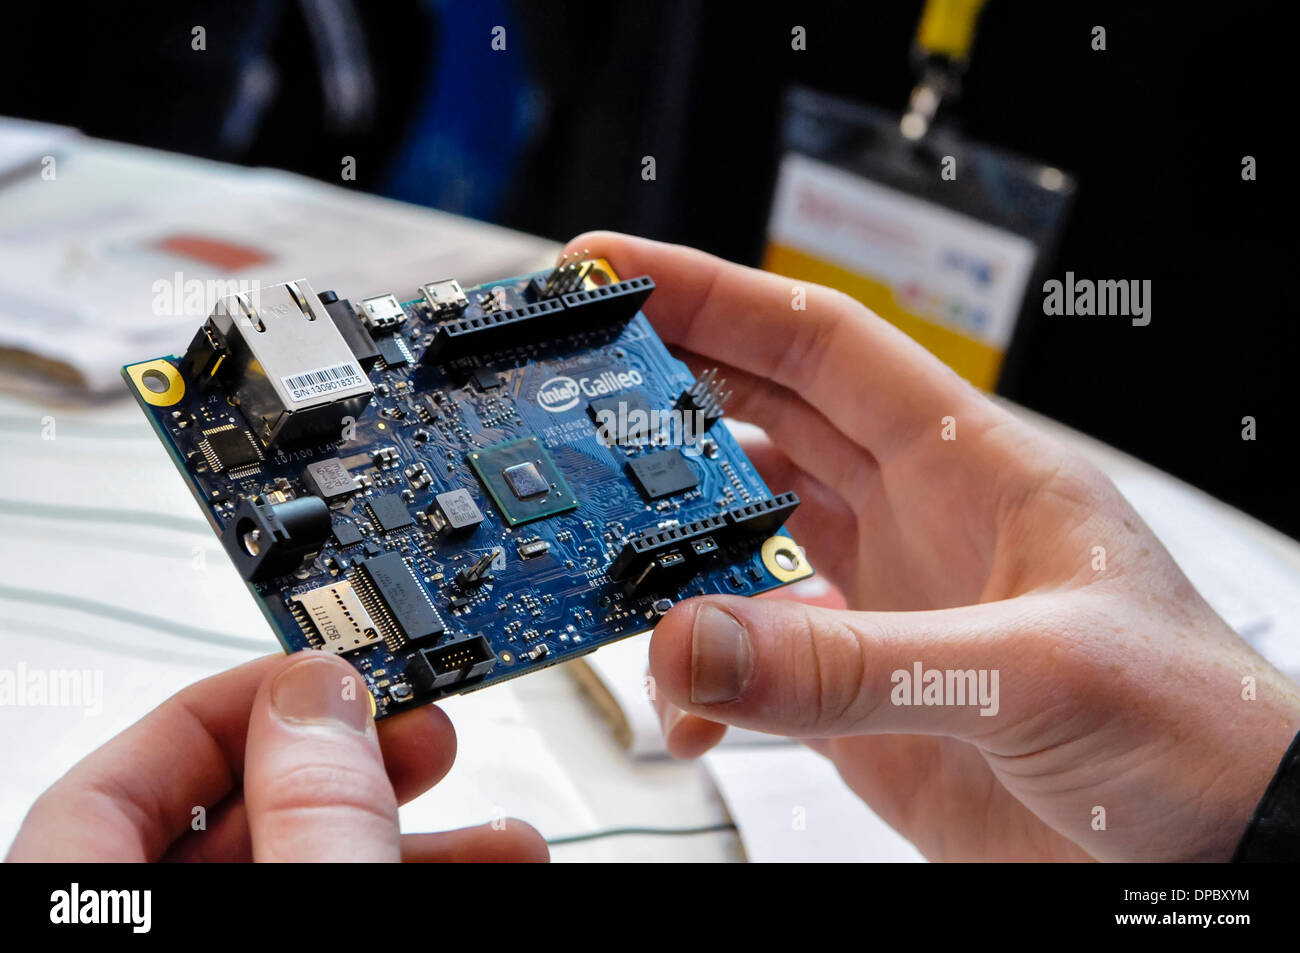 Eine Computer-Platine Raspberry Pi mit Maus und Tastatur Stockfotografie -  Alamy